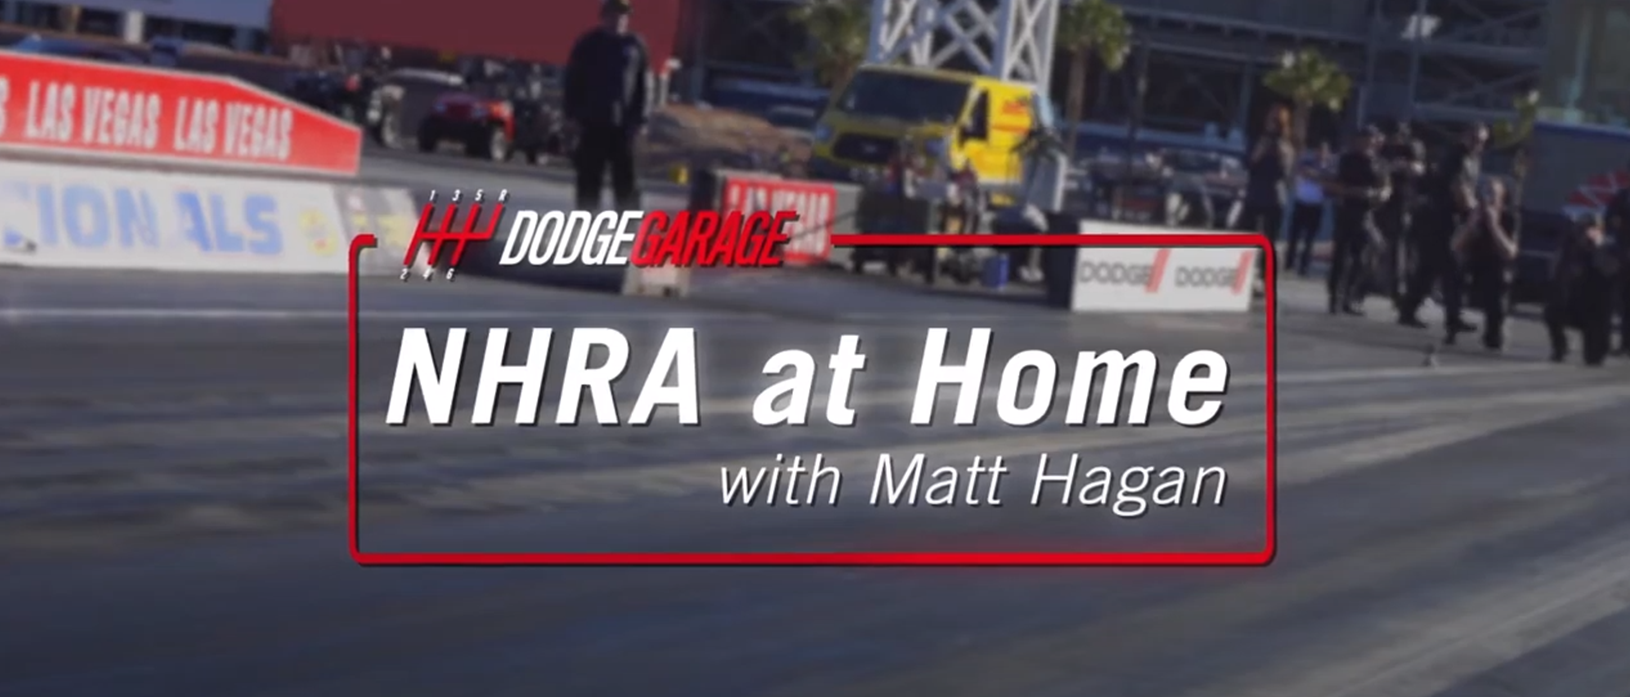 NHRA at Home with Matt Hagan